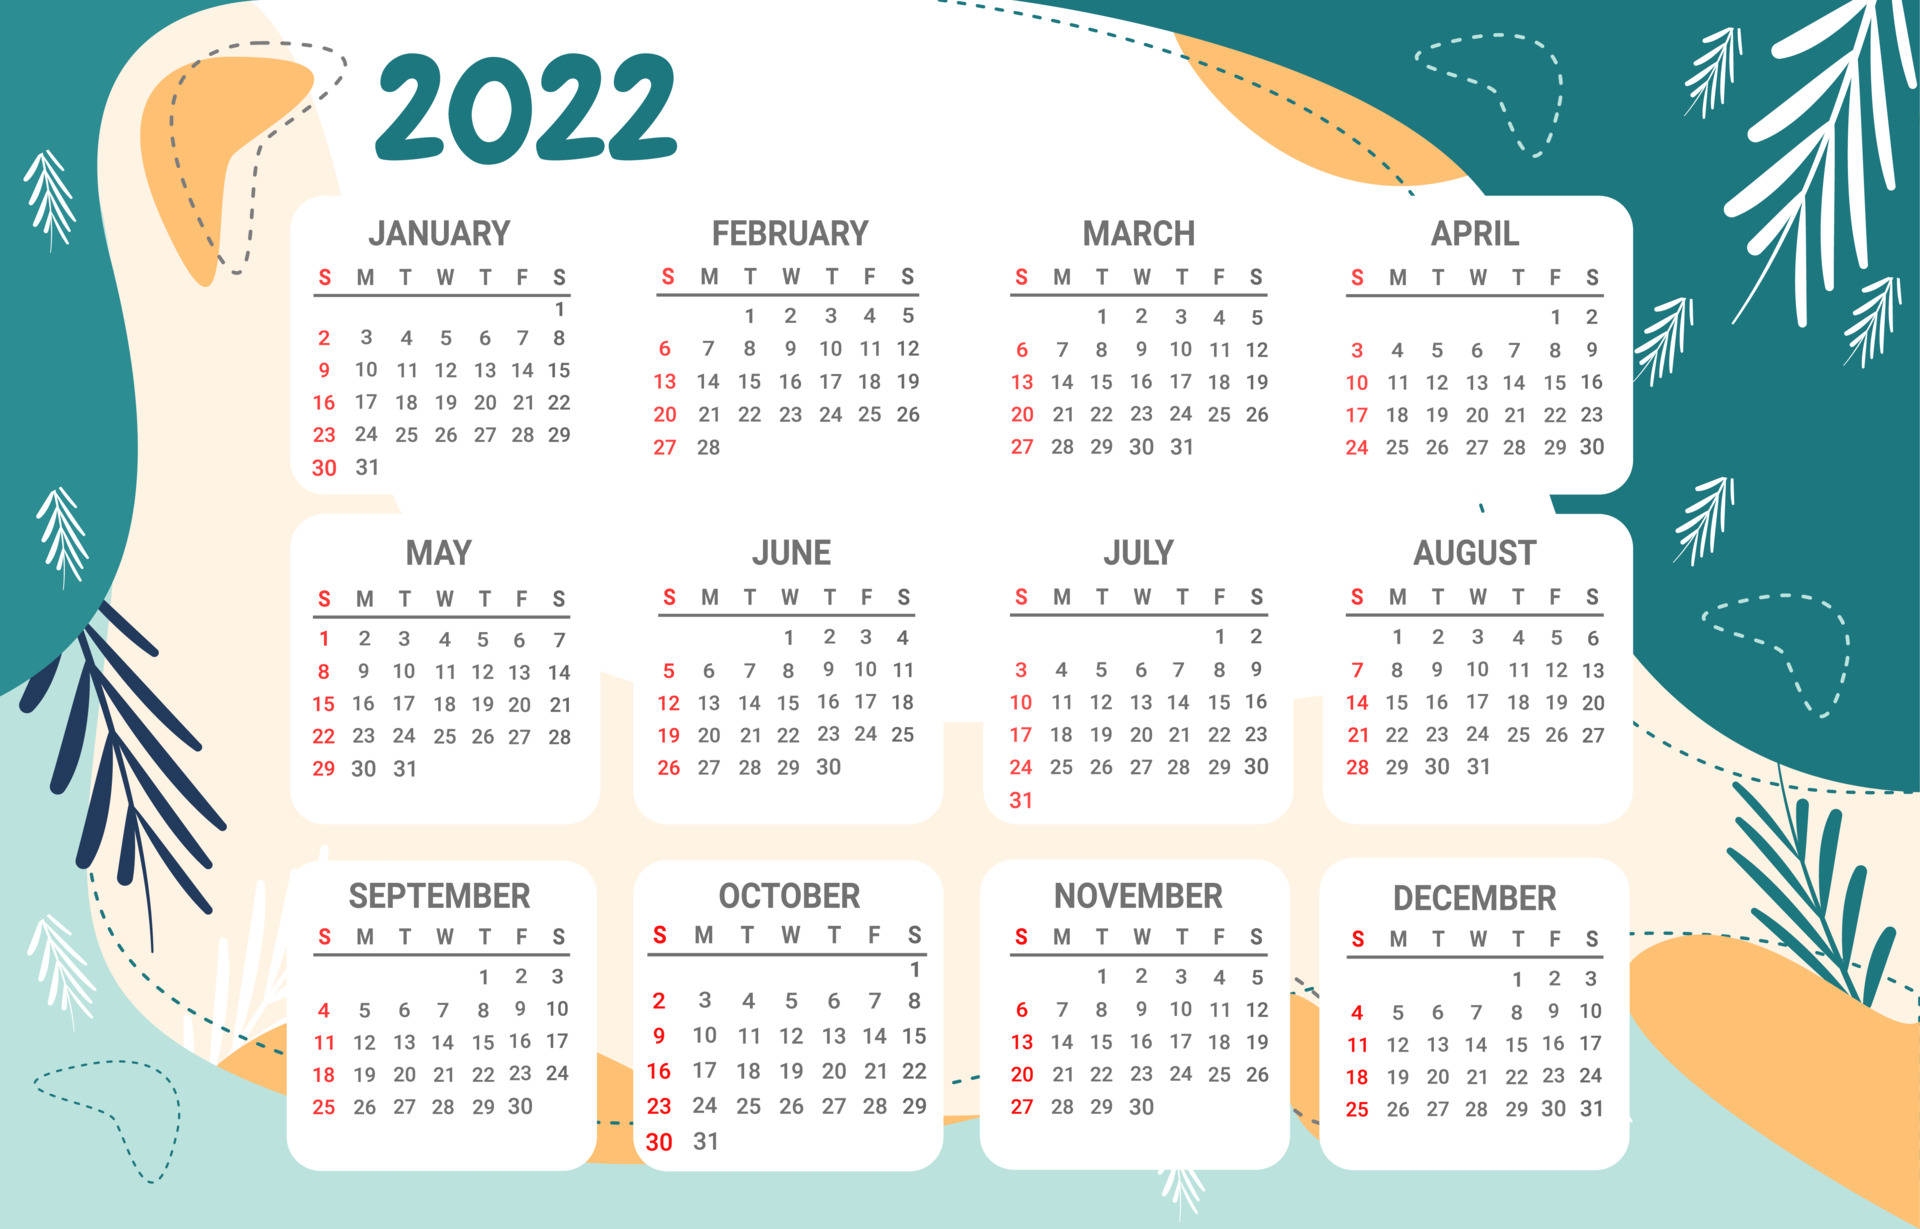 2022 Tropical Themed Calendar Wallpaper